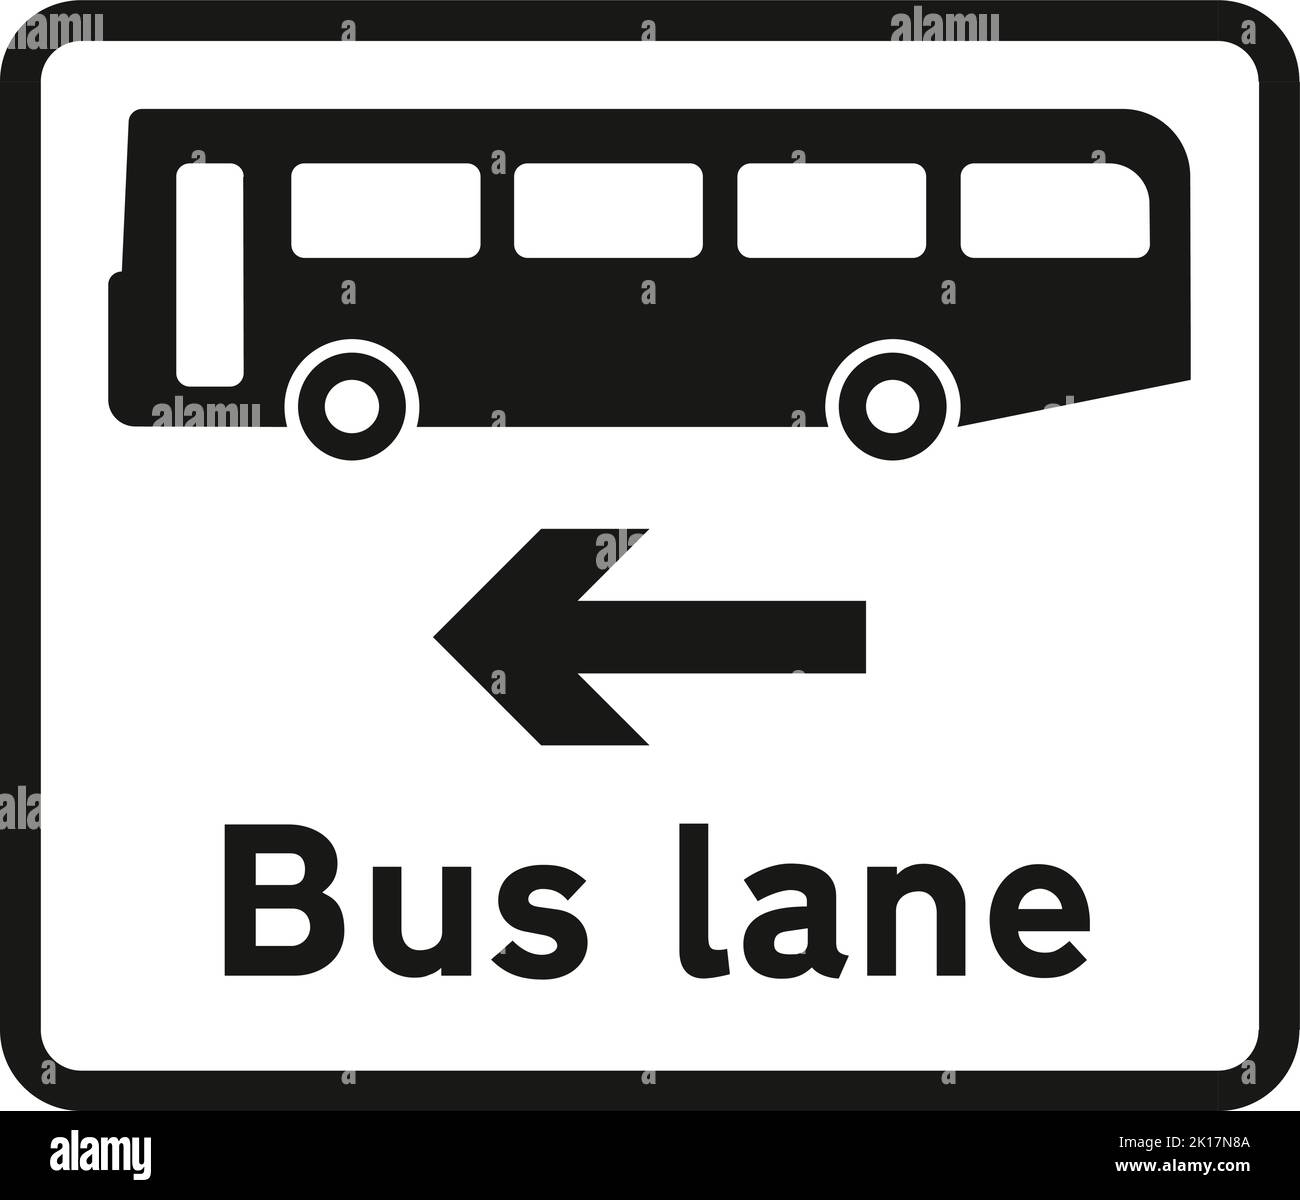 Corsia degli autobus sulla strada all'incrocio davanti, il codice stradale Highway segnaletica stradale, indicazioni che danno ordini, segni con cerchi rossi sono per lo più proibitivi. Piatti sotto si Illustrazione Vettoriale